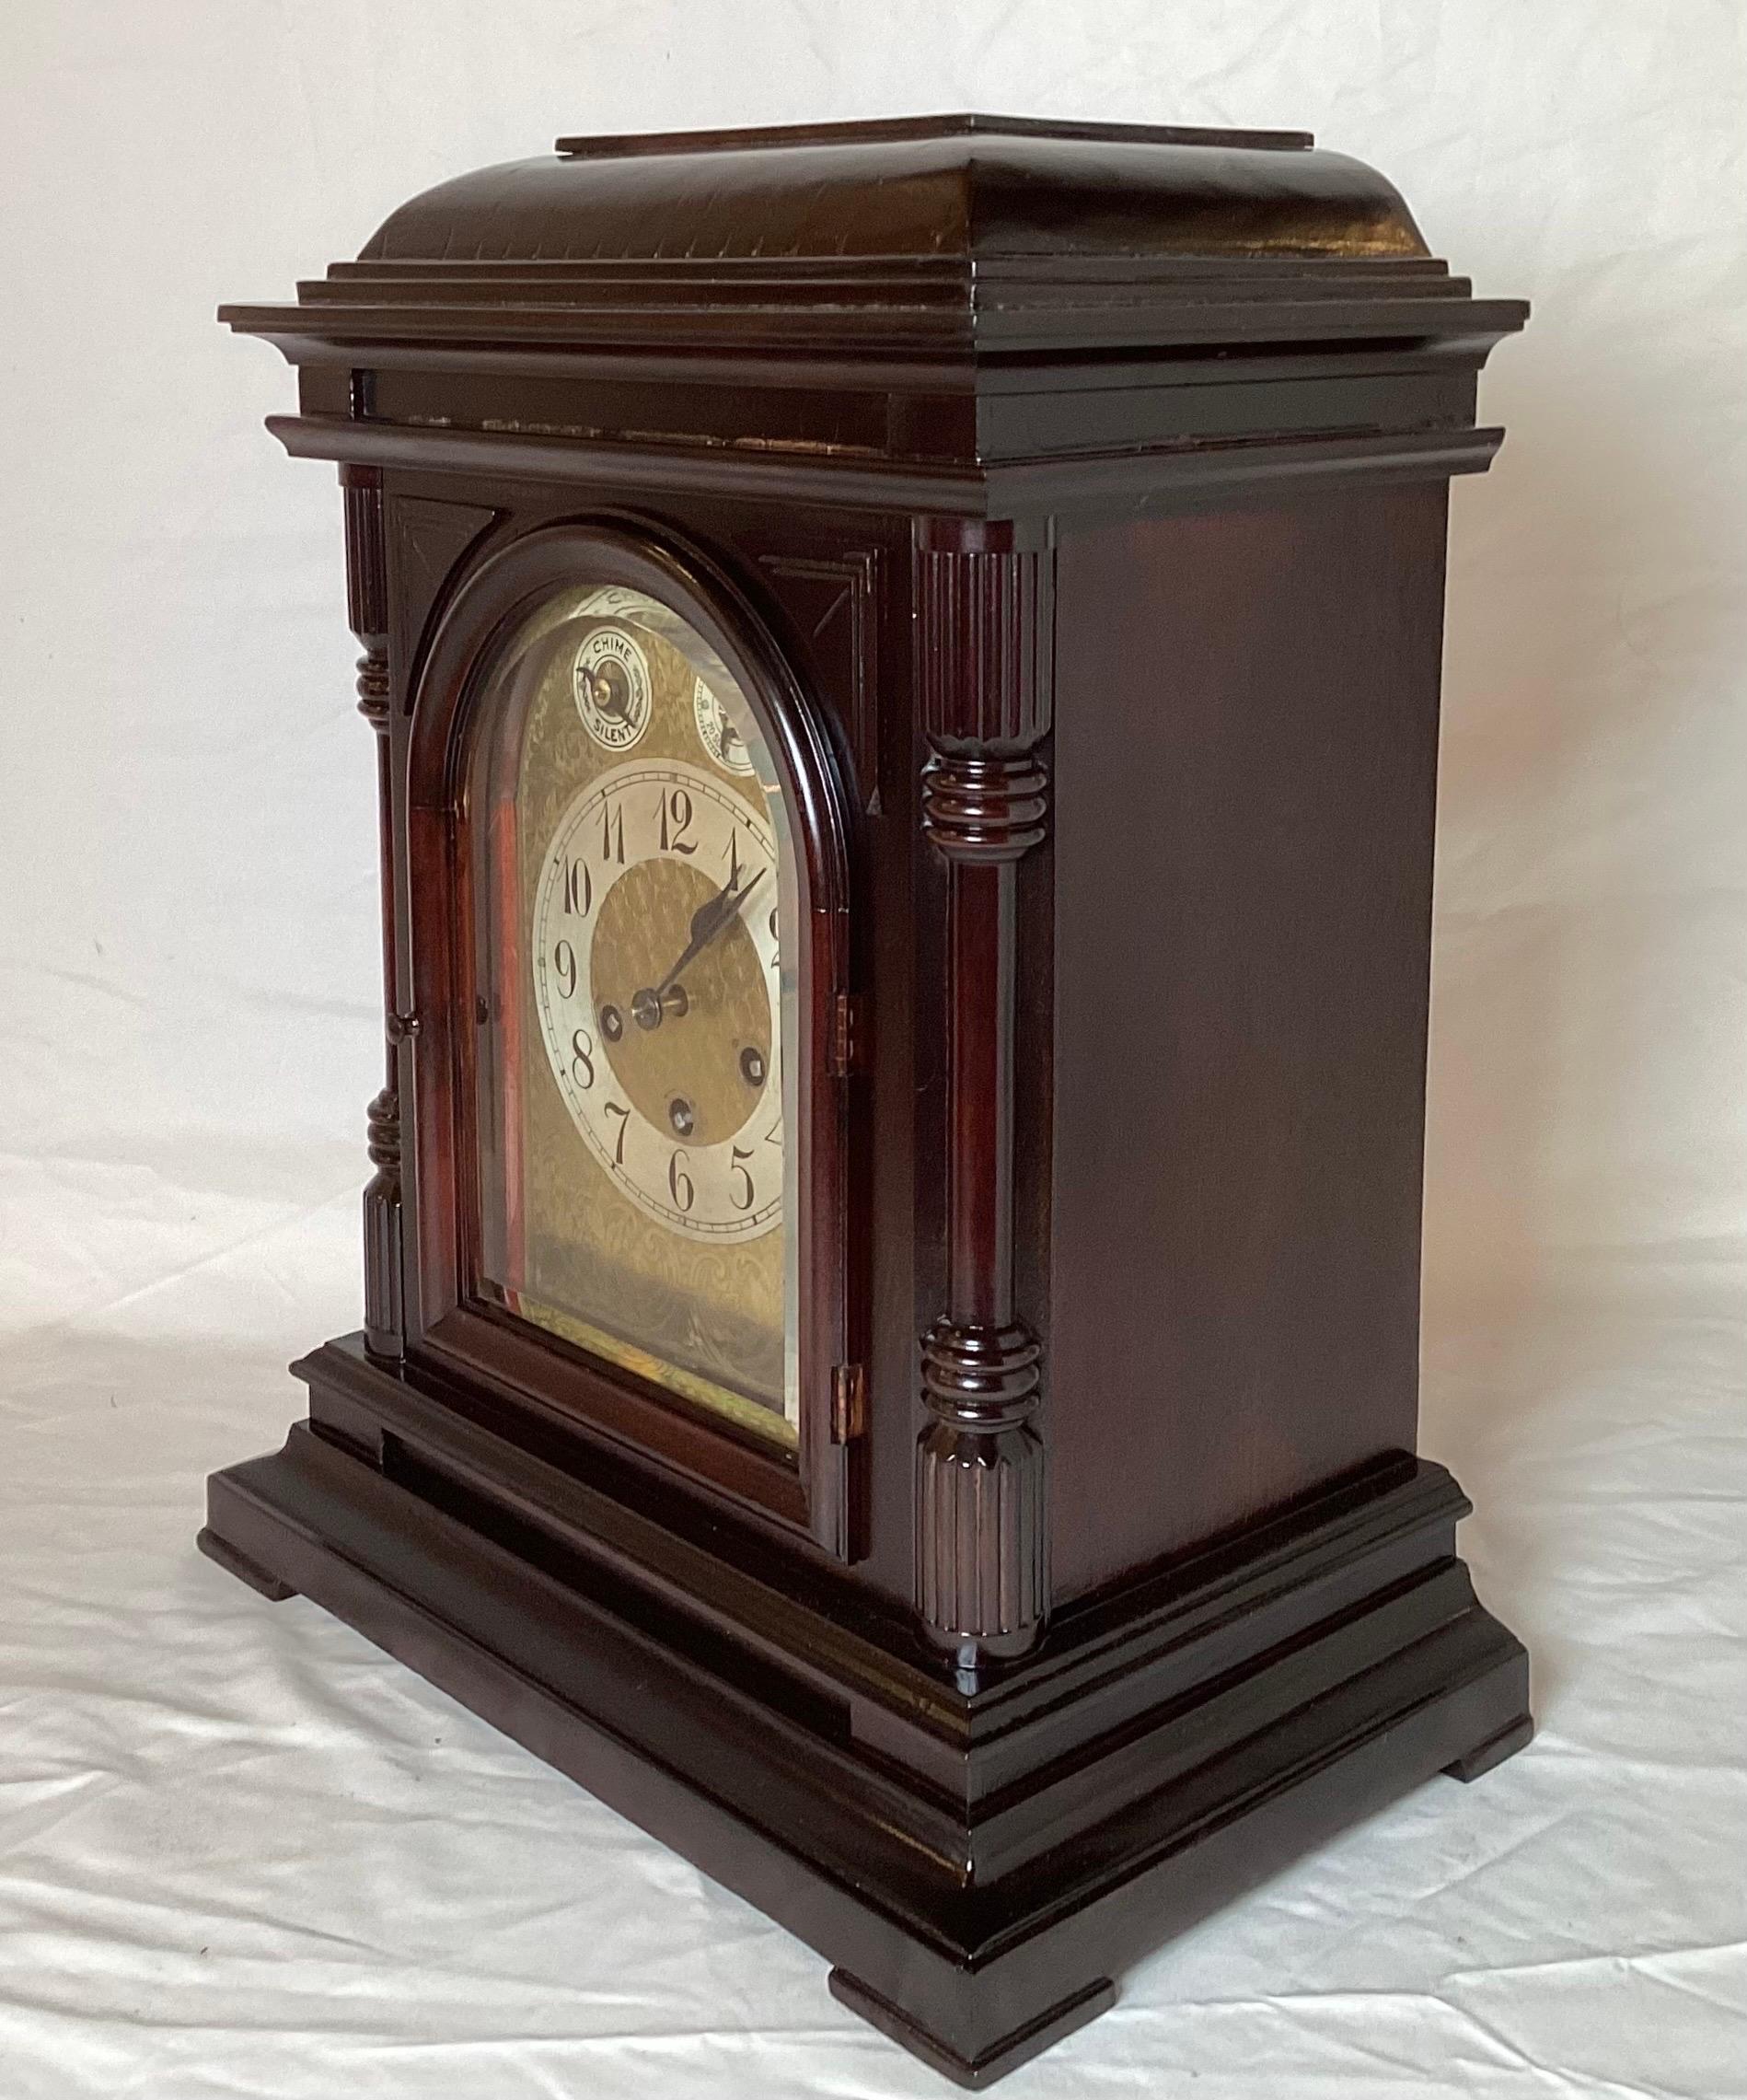 Elegante horloge à console en acajou avec façade en verre biseauté. L'horloge, à mouvement allemand, est dotée d'un carillon de Westminster à chaque quart d'heure et d'une sonnerie à l'heure. L'étui a été remis à neuf et est magnifique sur le